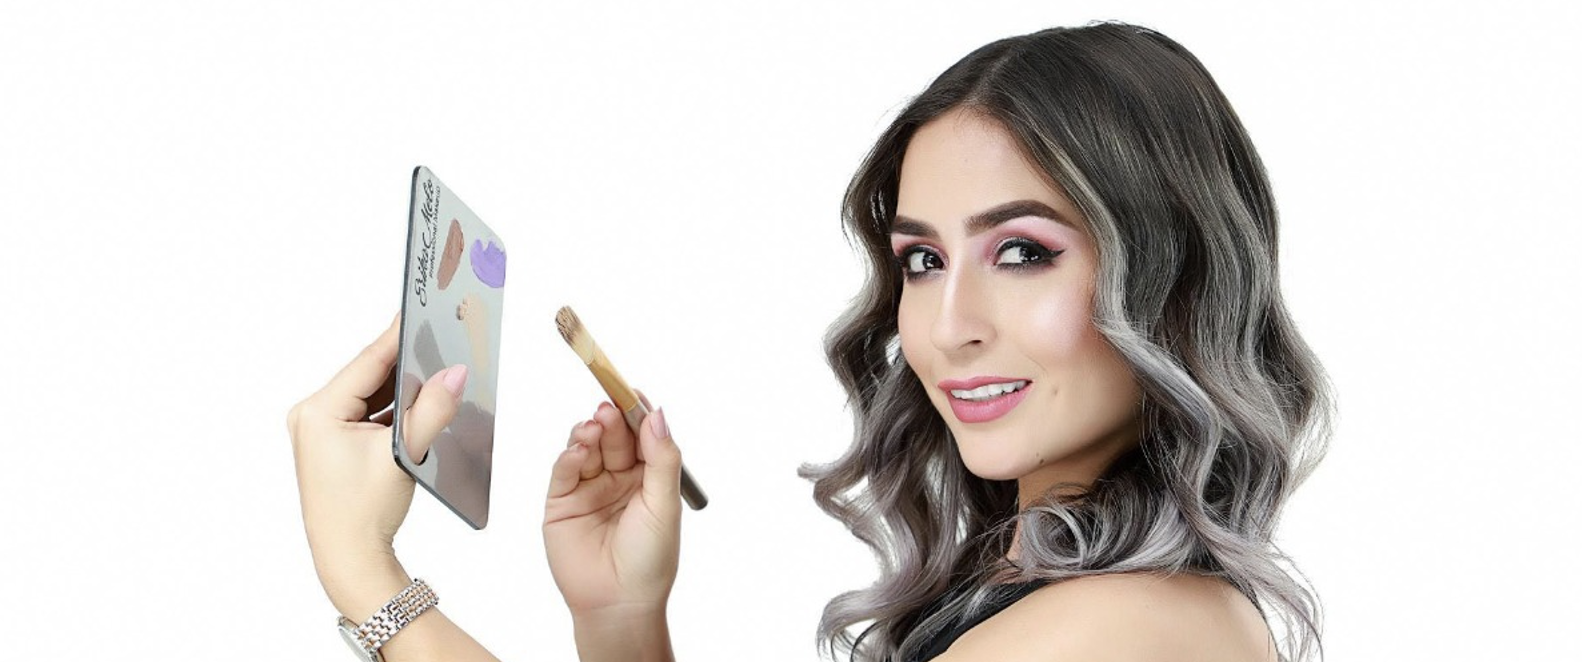 Érika Melo, make-up artist, sostiene una paleta de maquillaje en su mano izquierda y una brocha en su mano derecha, mientras sonríe a la cámara